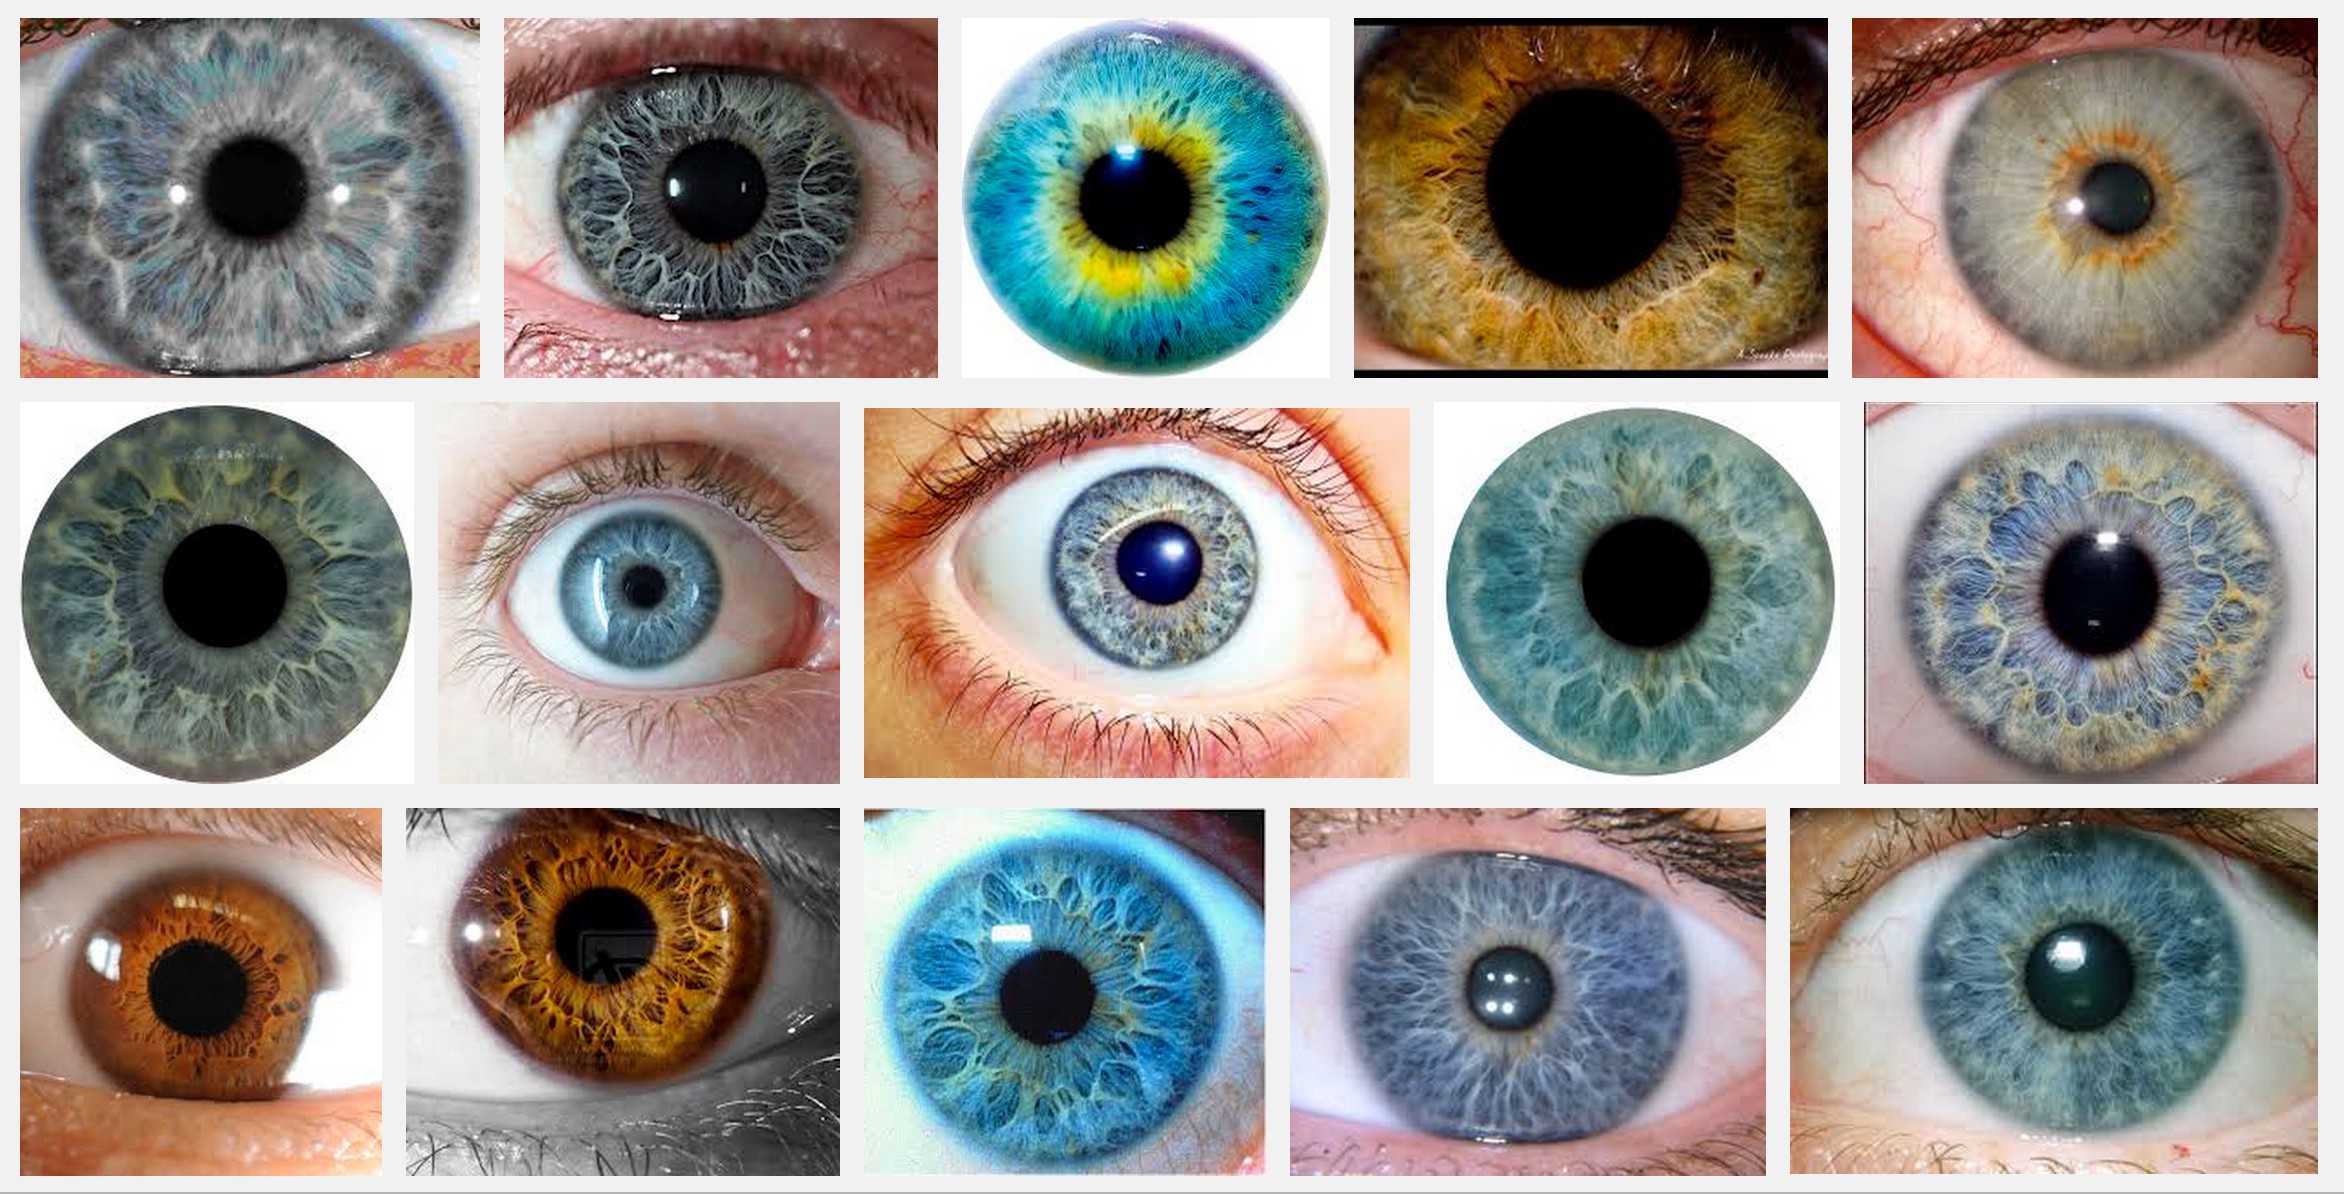 Как узнать свой цвет глаз по фото онлайн